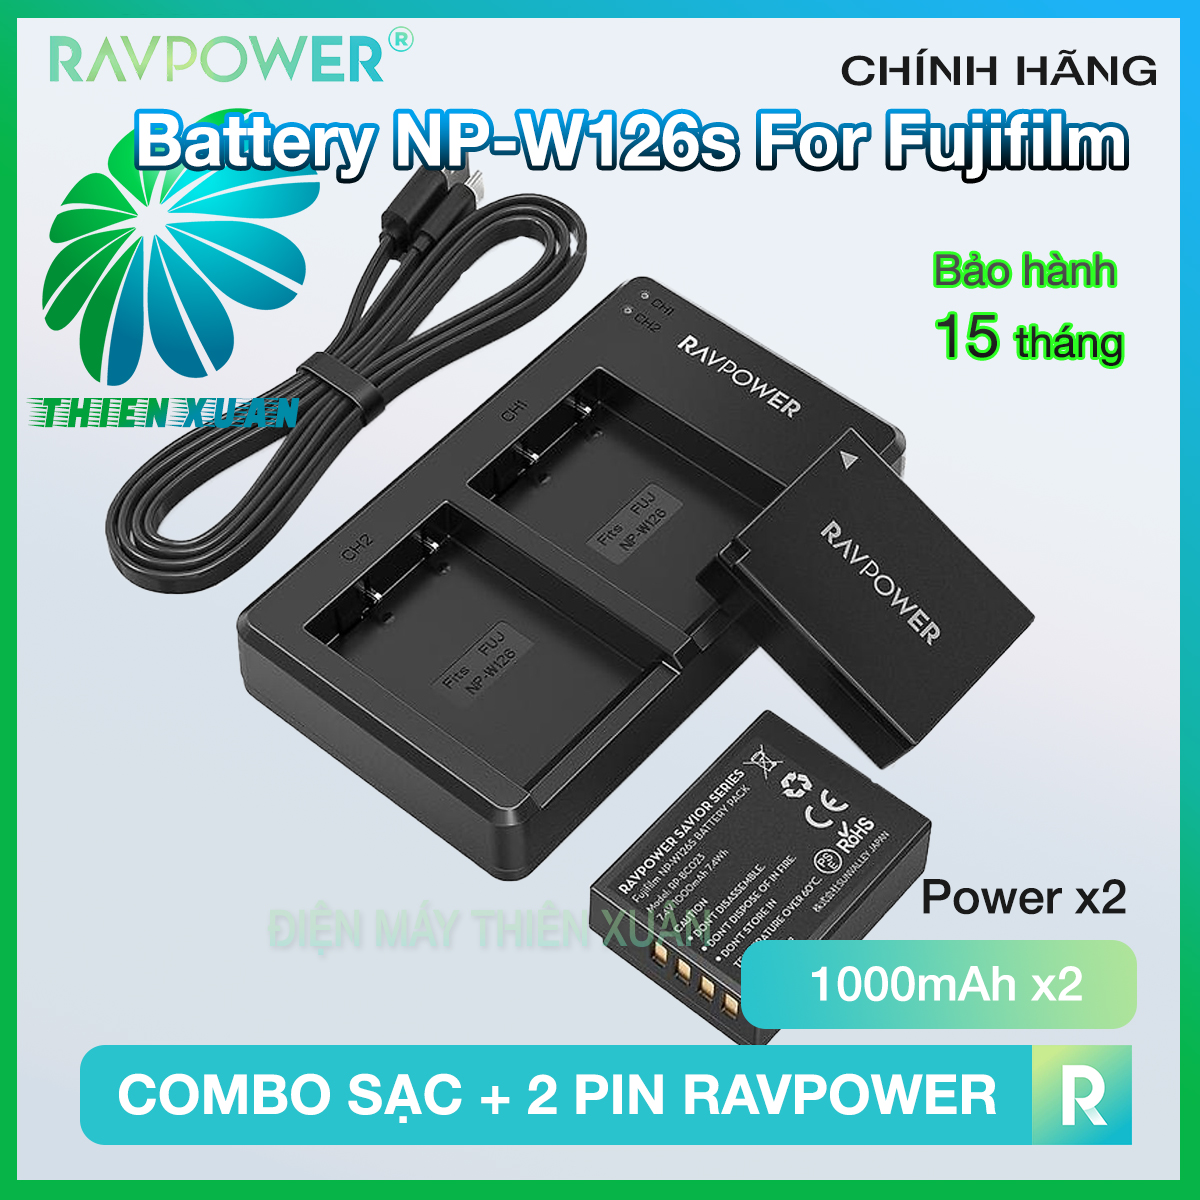 Bộ 2 pin và sạc kép RAVPower NP-W126S Cho Fujifilm XT30 XT20 10 XT3 XA7 X100V X100F XT200 XA5 XPRO3